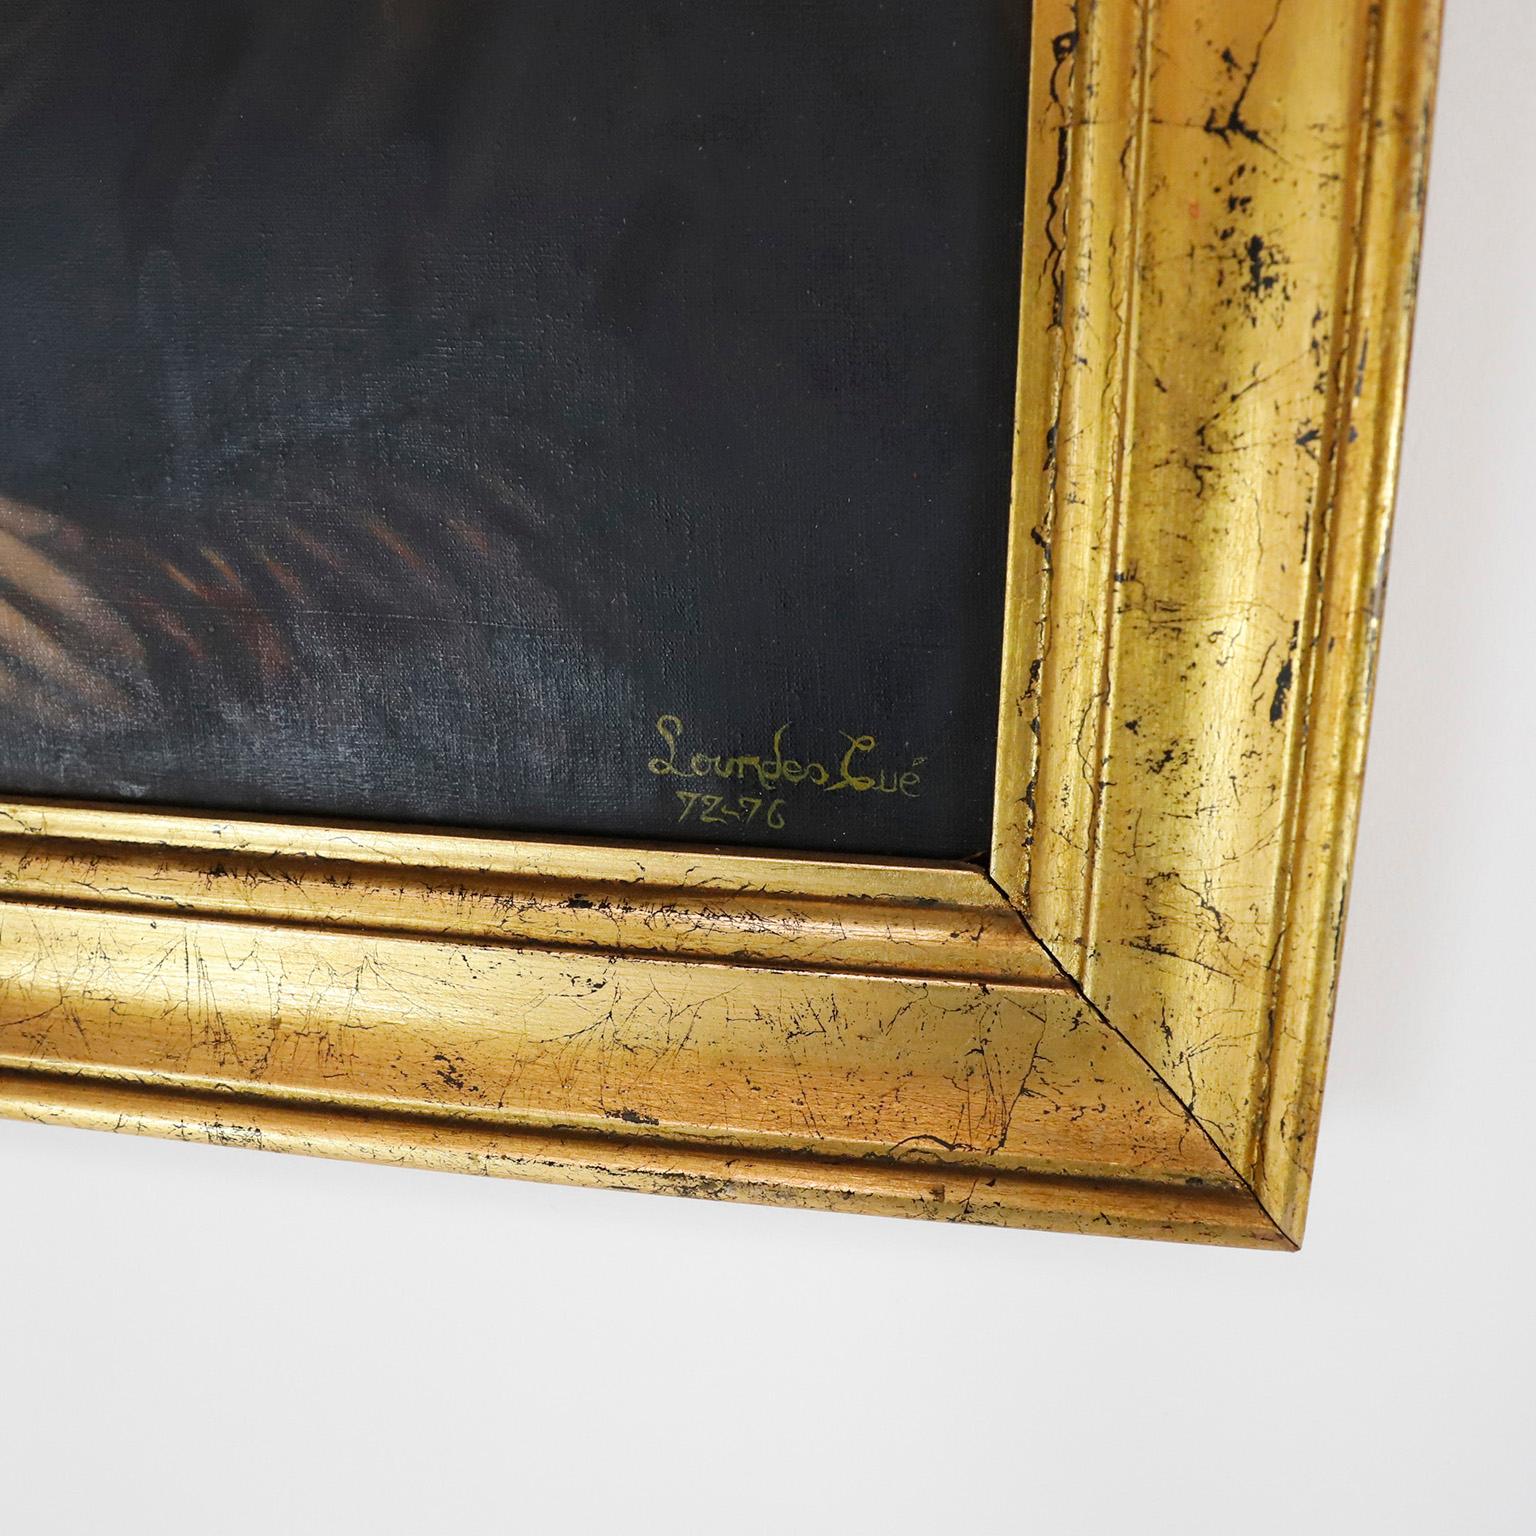 Peint en 1972 et 1976. Nous vous proposons cette réplique antique de Monalisa peinte à la main et signée par Lourdes Cúe.